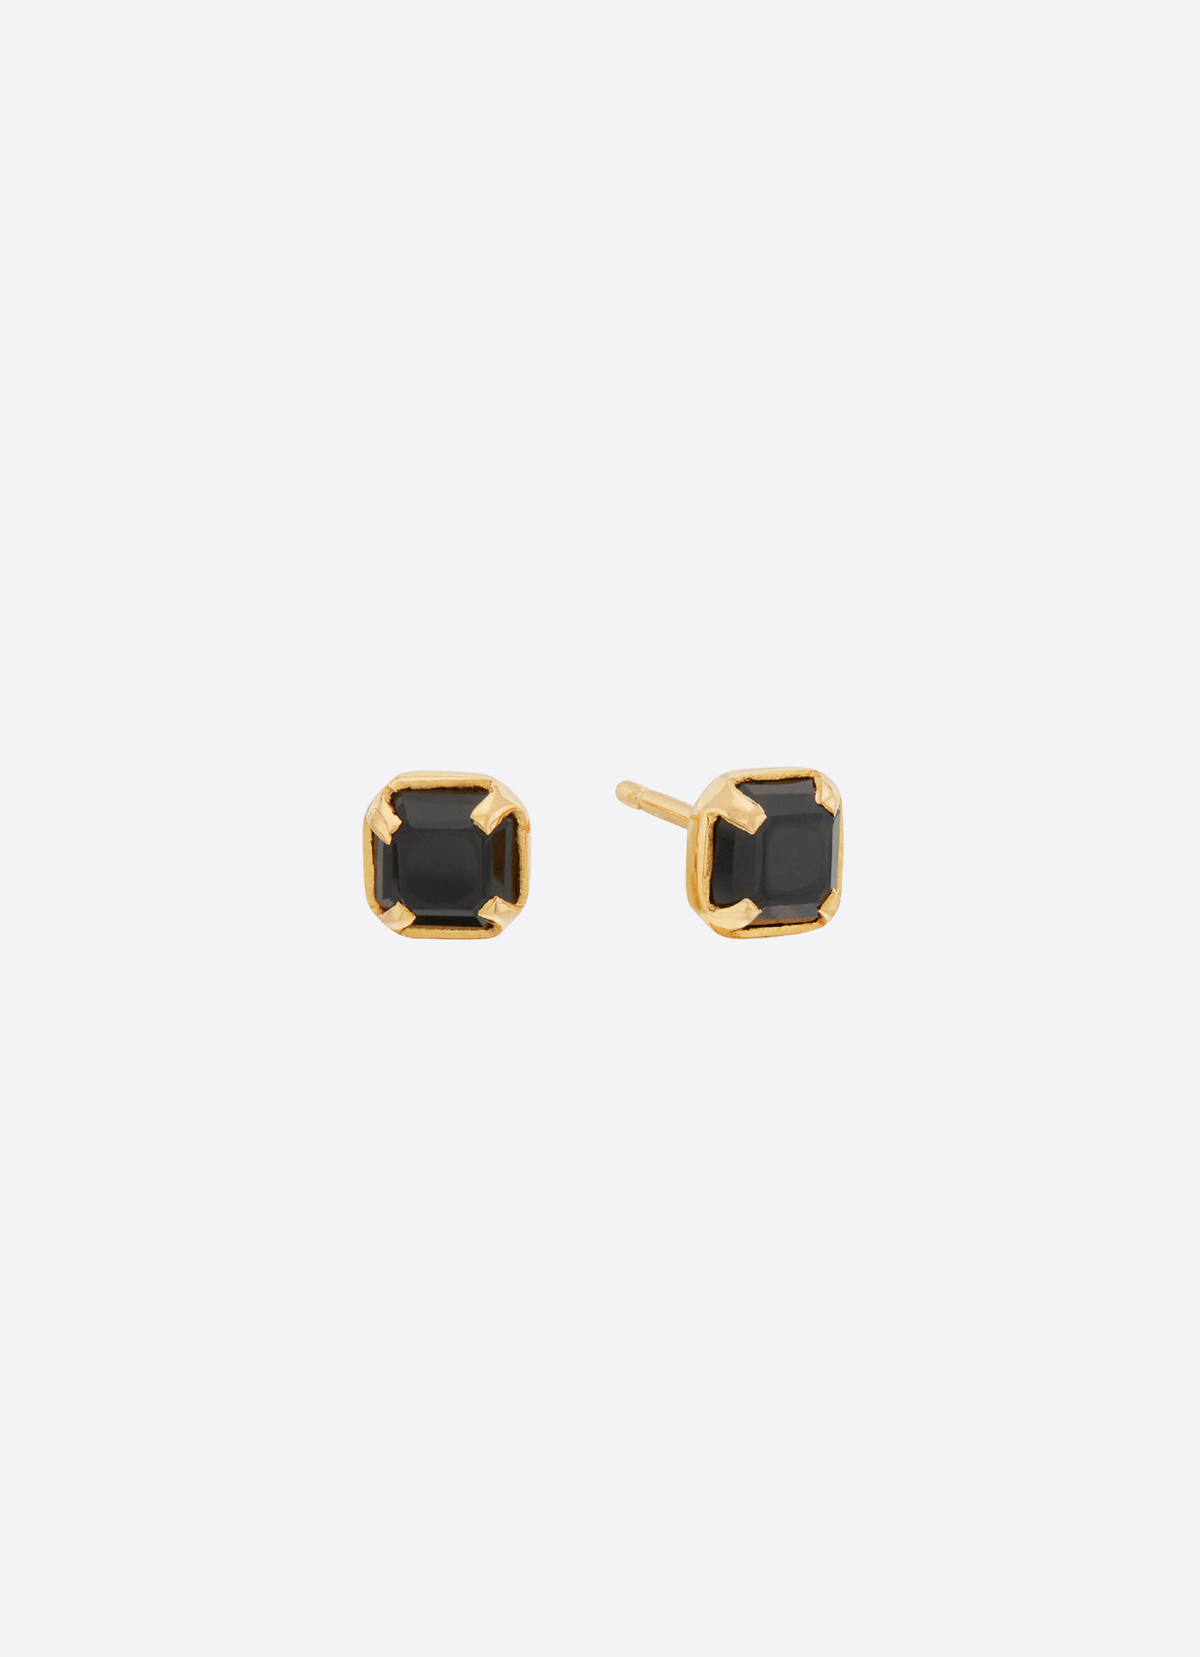 Onyx earrings 